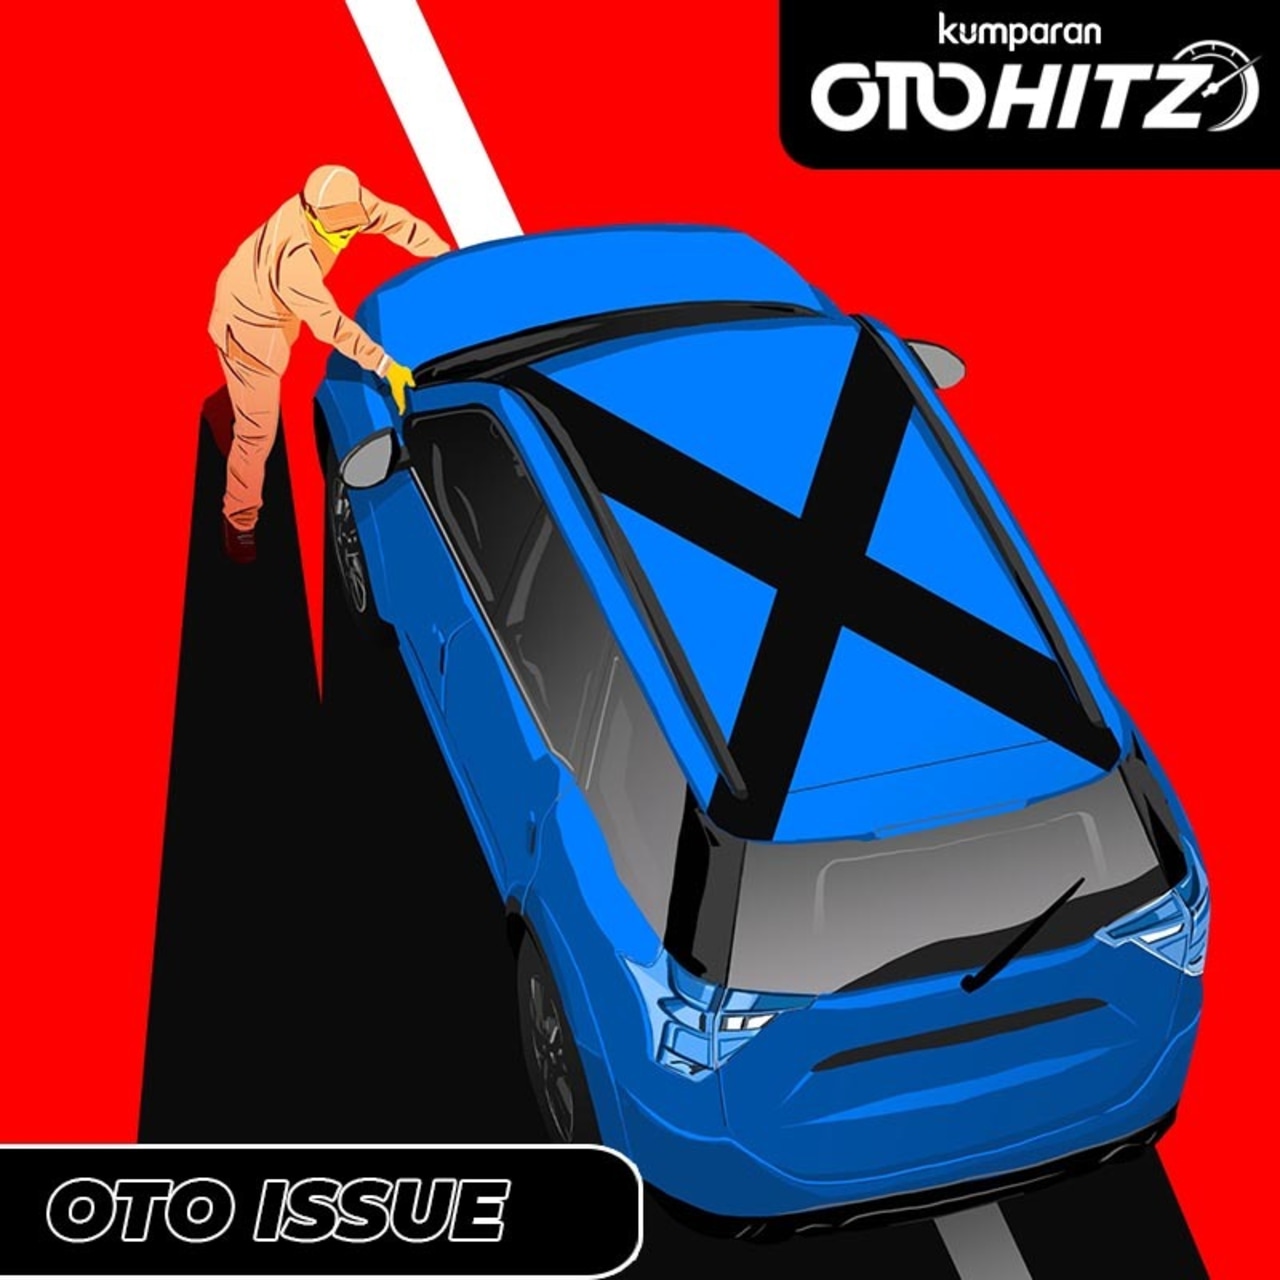 otomotif, OTOHITZ XI, OTOHITZ, Recalll, Indonesia, 